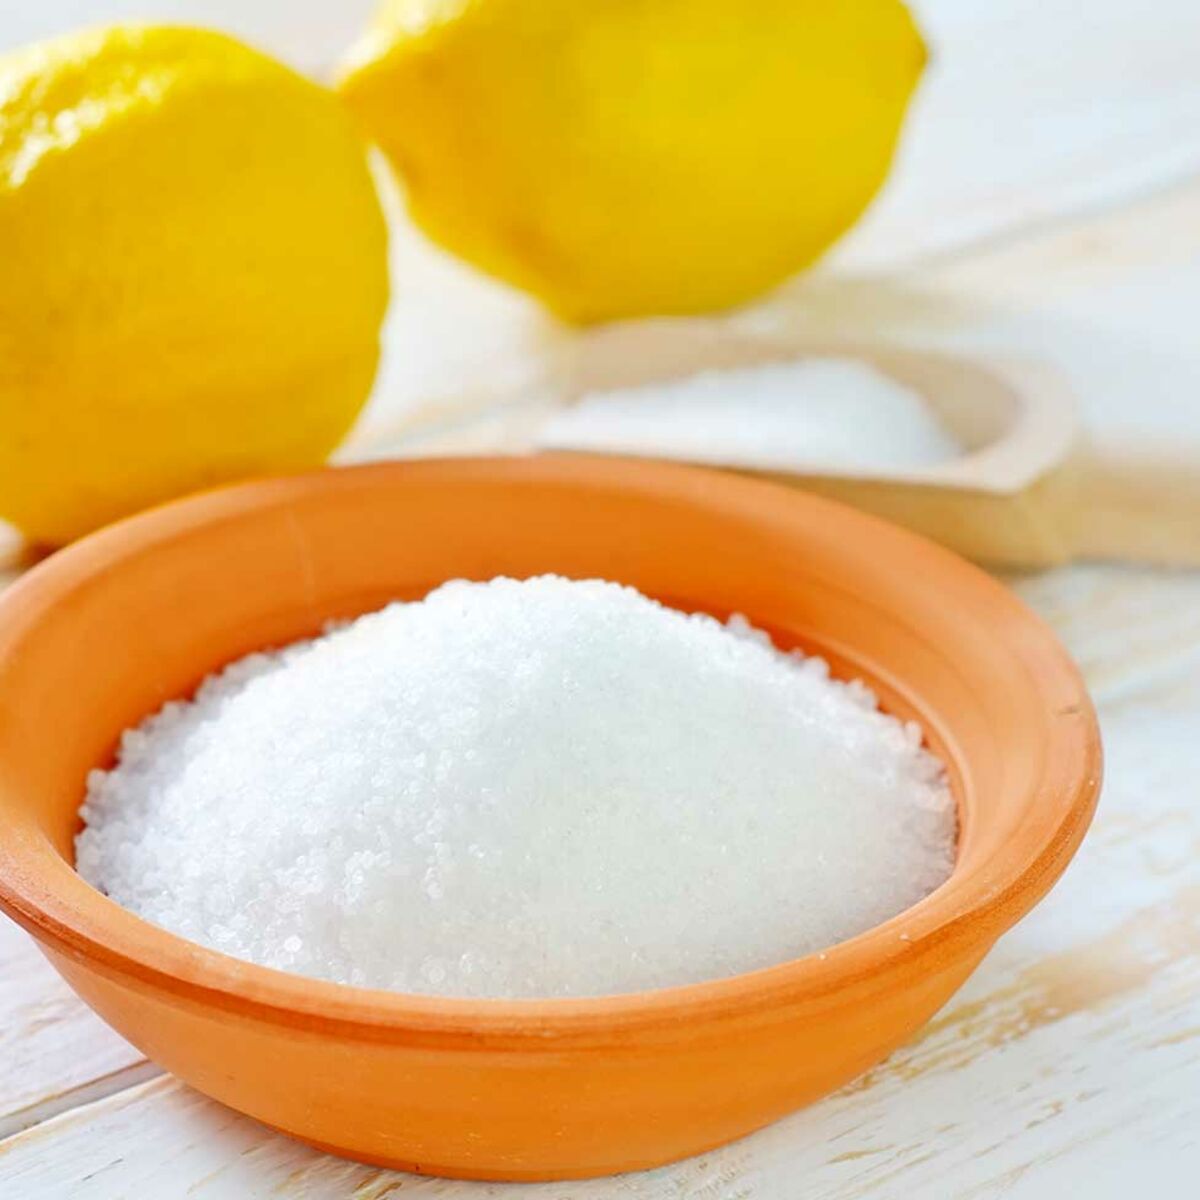 Doit-on consommer de l'acide citrique ? - Le blog